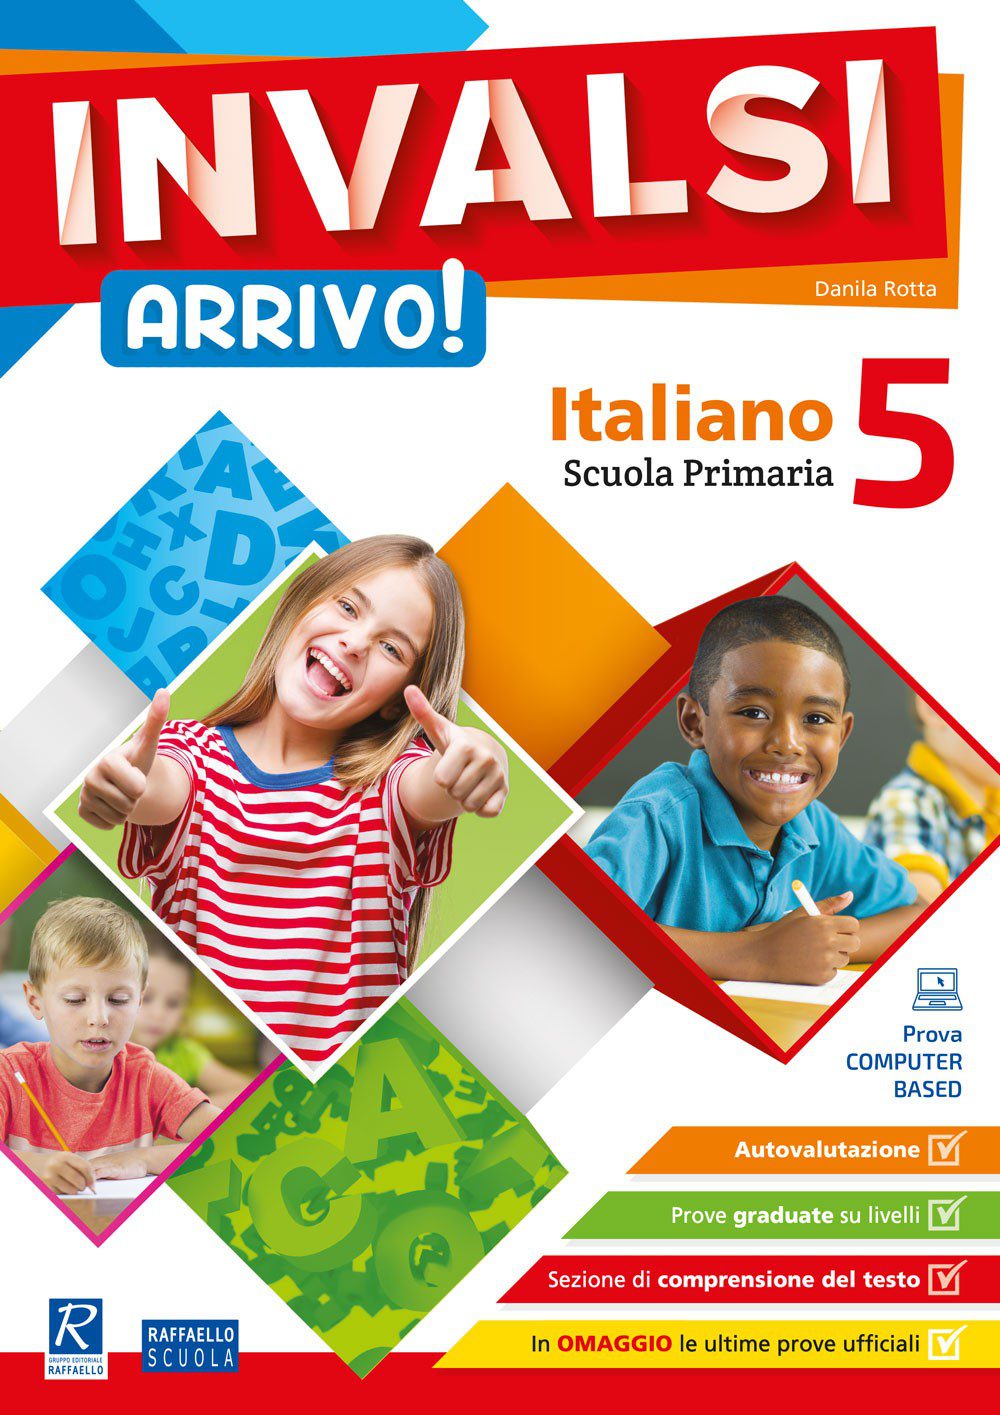 INVALSI Arrivo! - Italiano - Classe 5 - Raffaello Bookshop